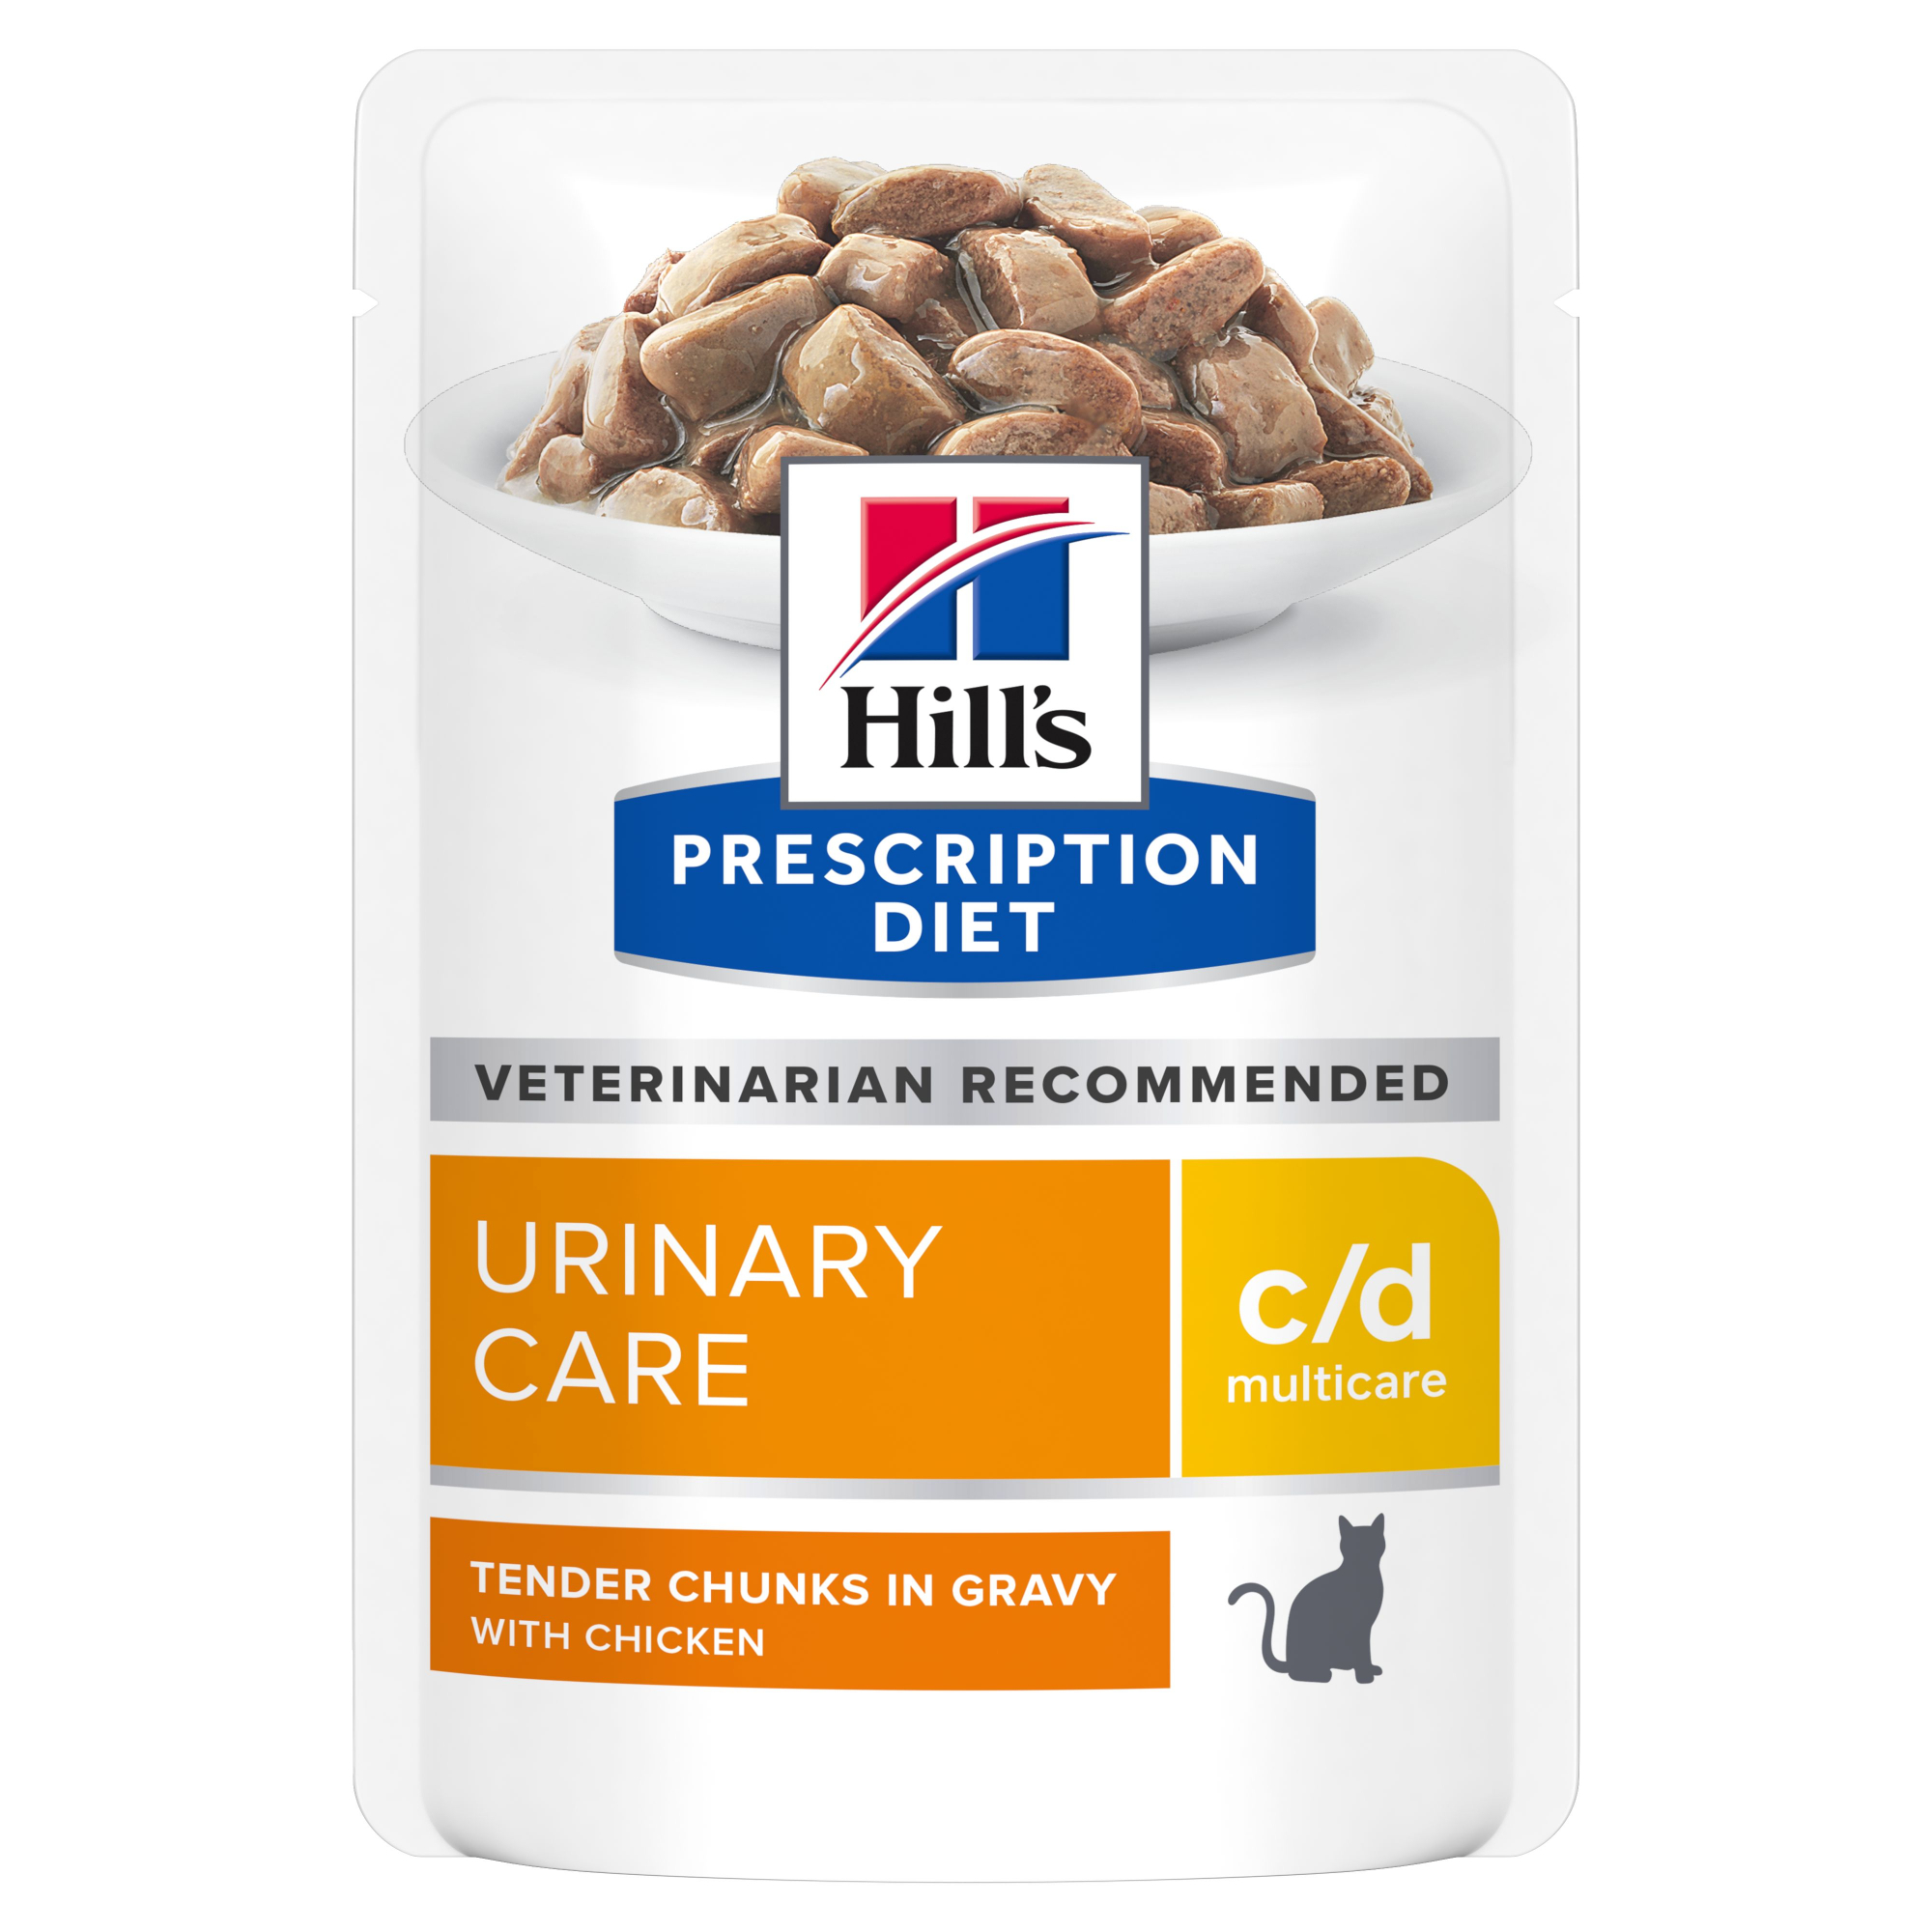 Alimentação para gato com problemas urinários e renais HILL'S Prescription Diet C/D Multicare Urinary Care